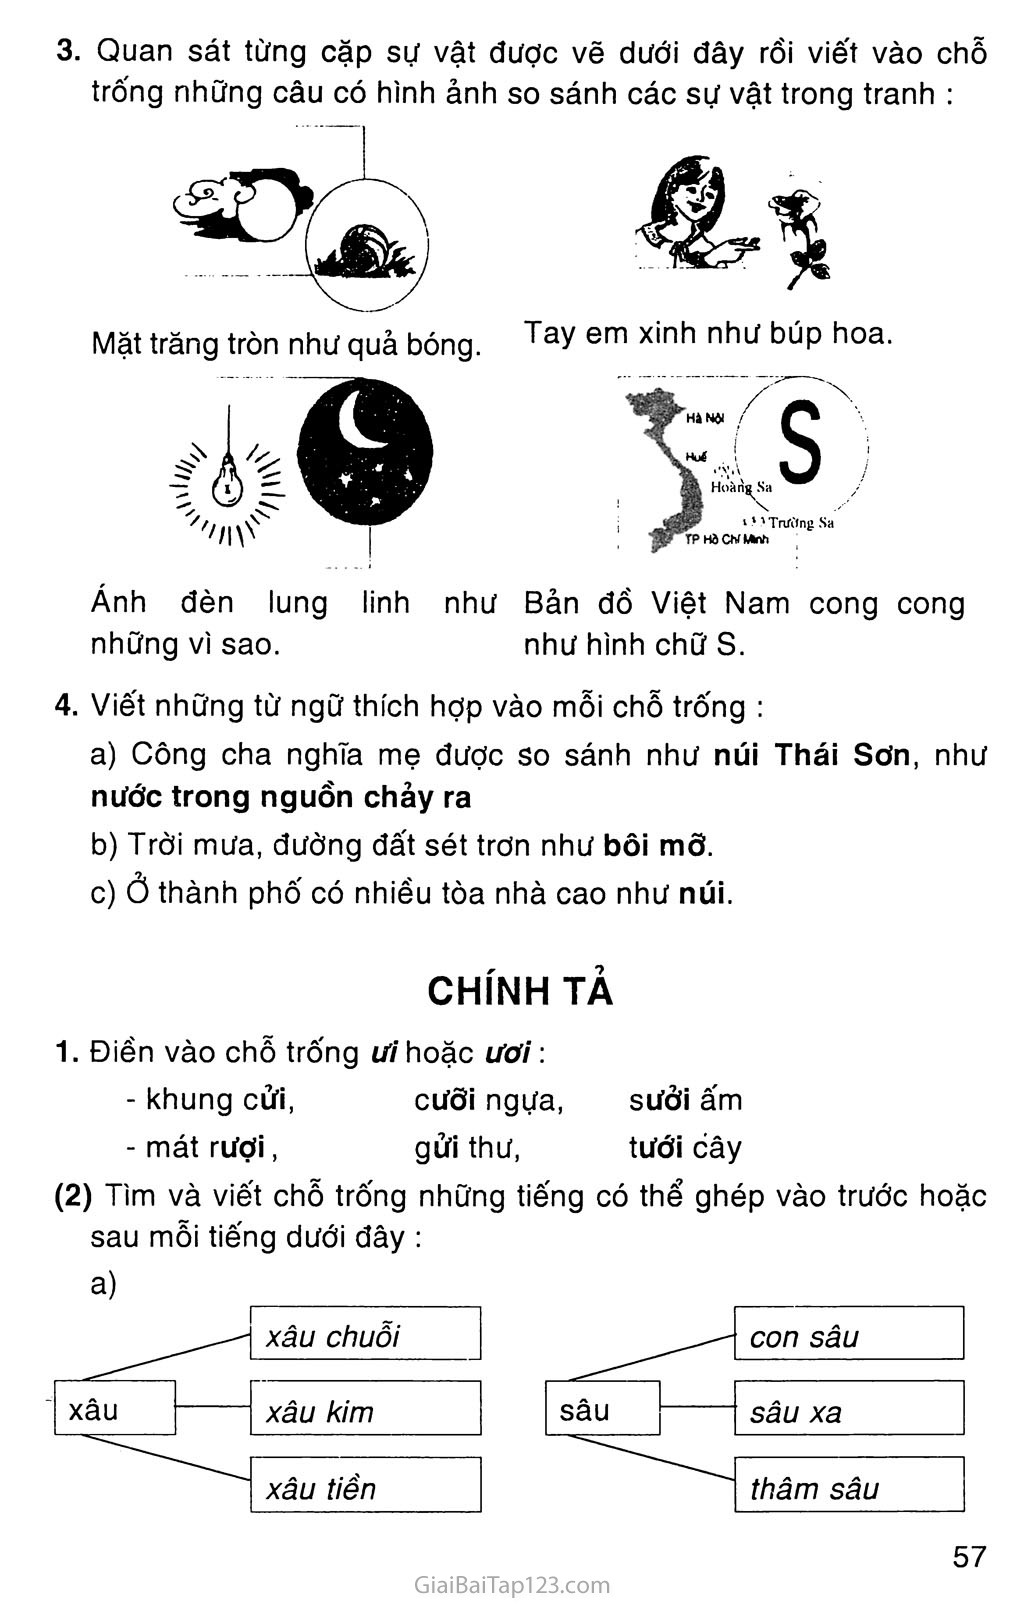 Giải vở bài tập Tiếng Việt lớp 3 tập 1 Tuần 15